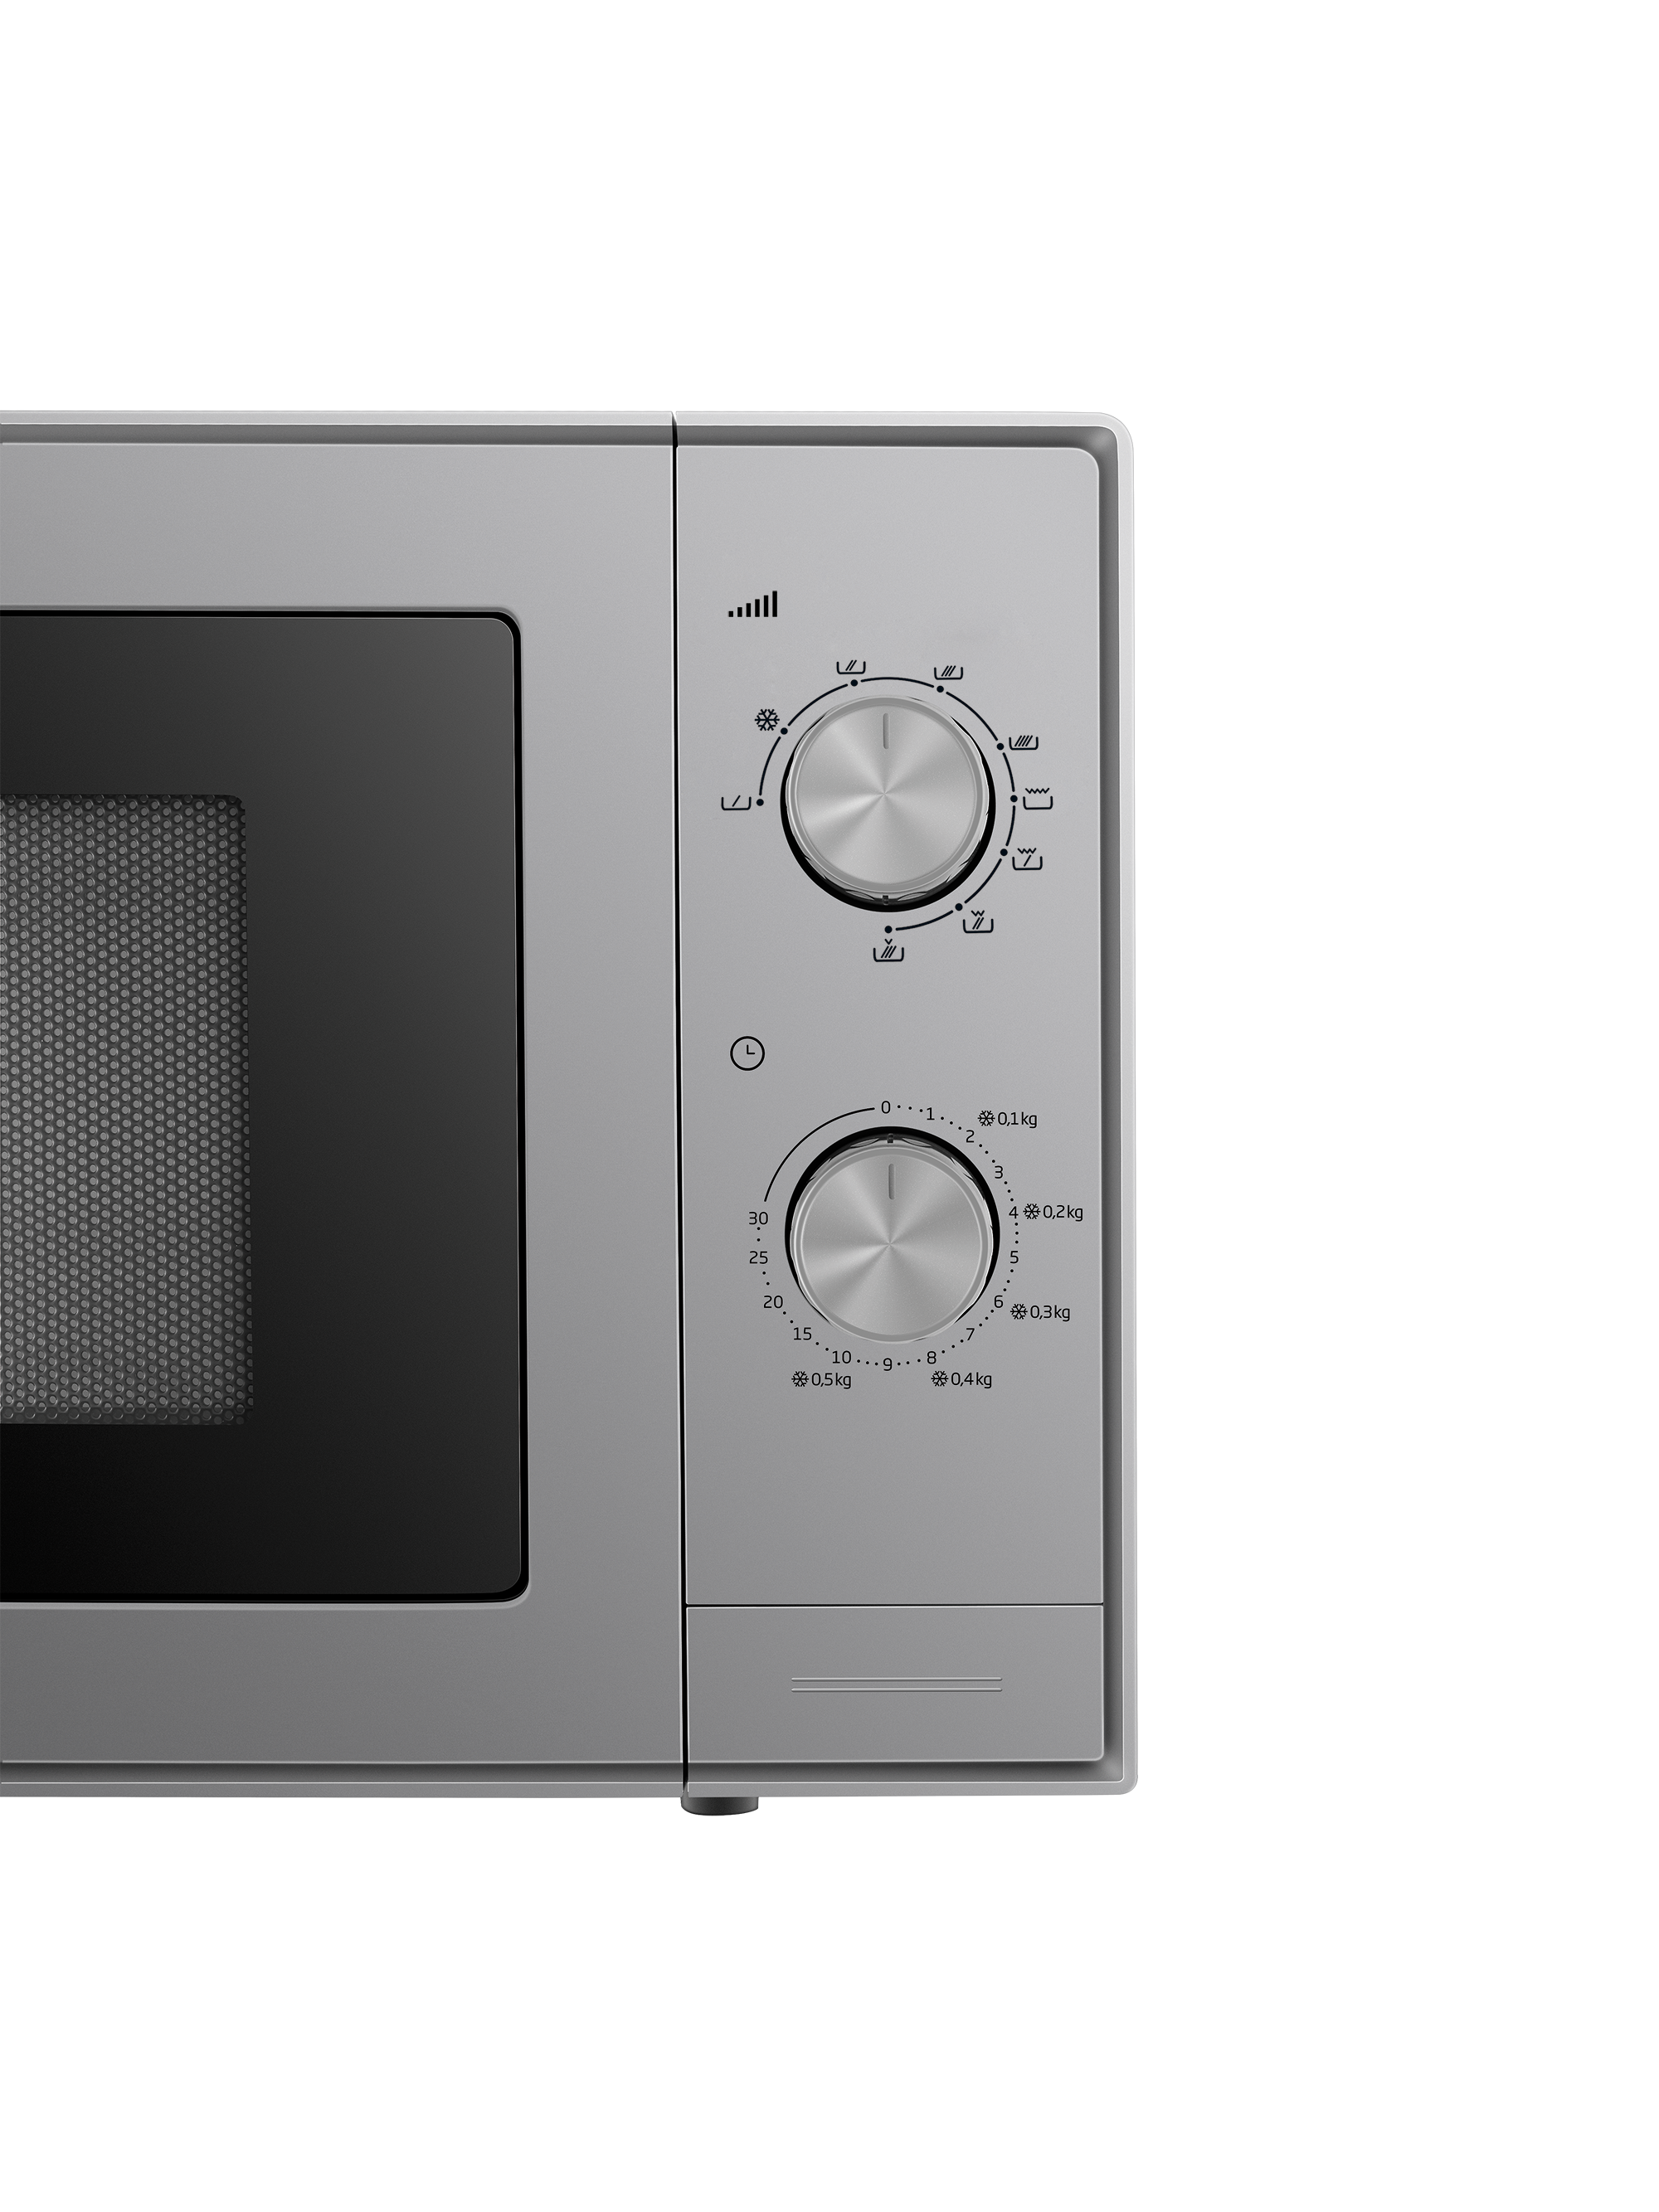 Микроволновая печь с грилем Beko MGC20100S цена 4885.65 грн - фотография 2